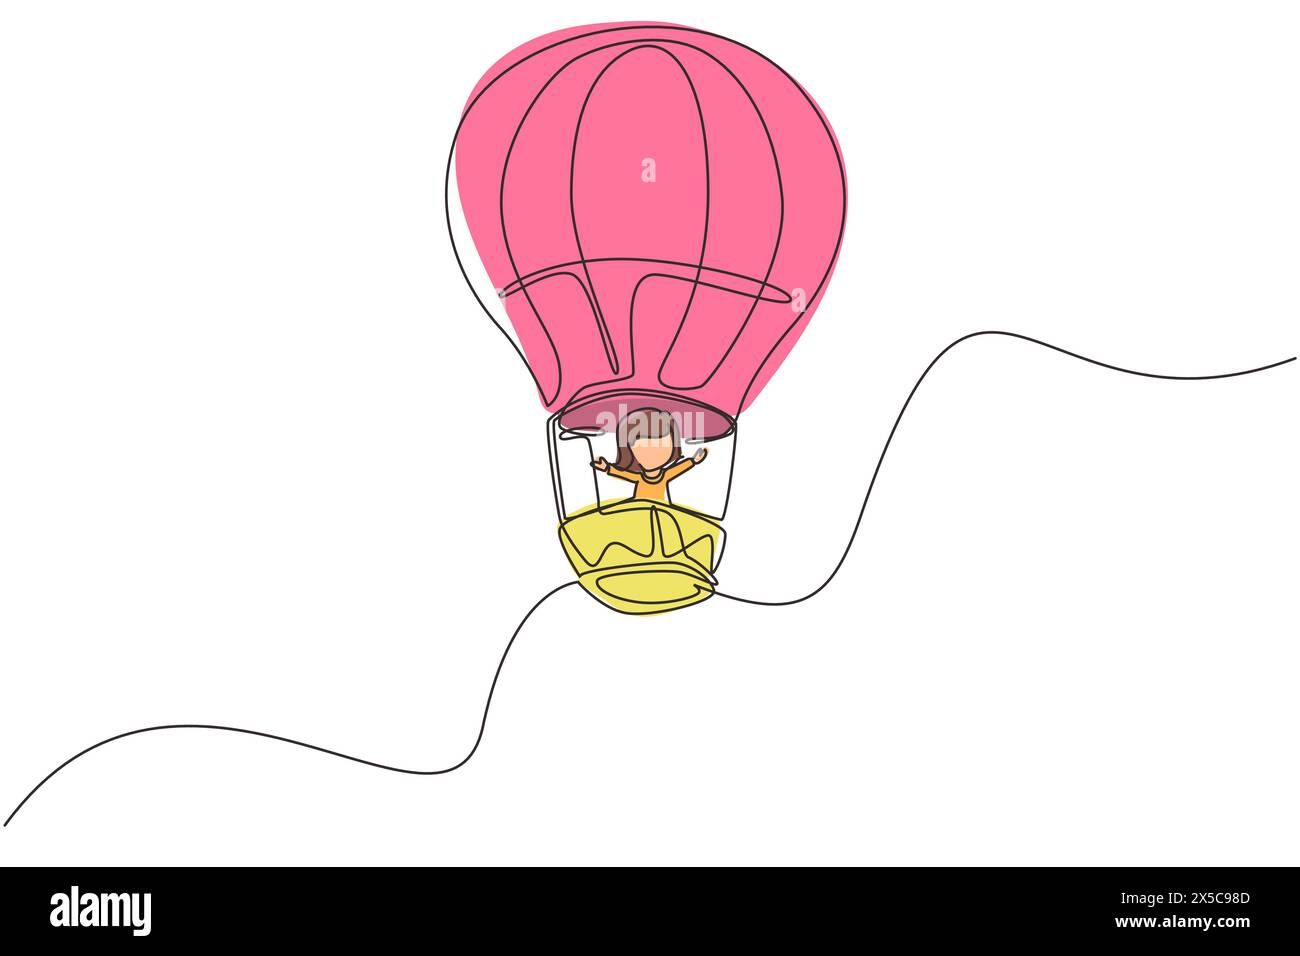 Eine durchgehende Linie, die ein kleines Mädchen im Heißluftballon am Himmel zeichnet. Glückliches Kind, das im Heißluftballon fährt. Kinder im Heißluftballon Abenteuer Stock Vektor